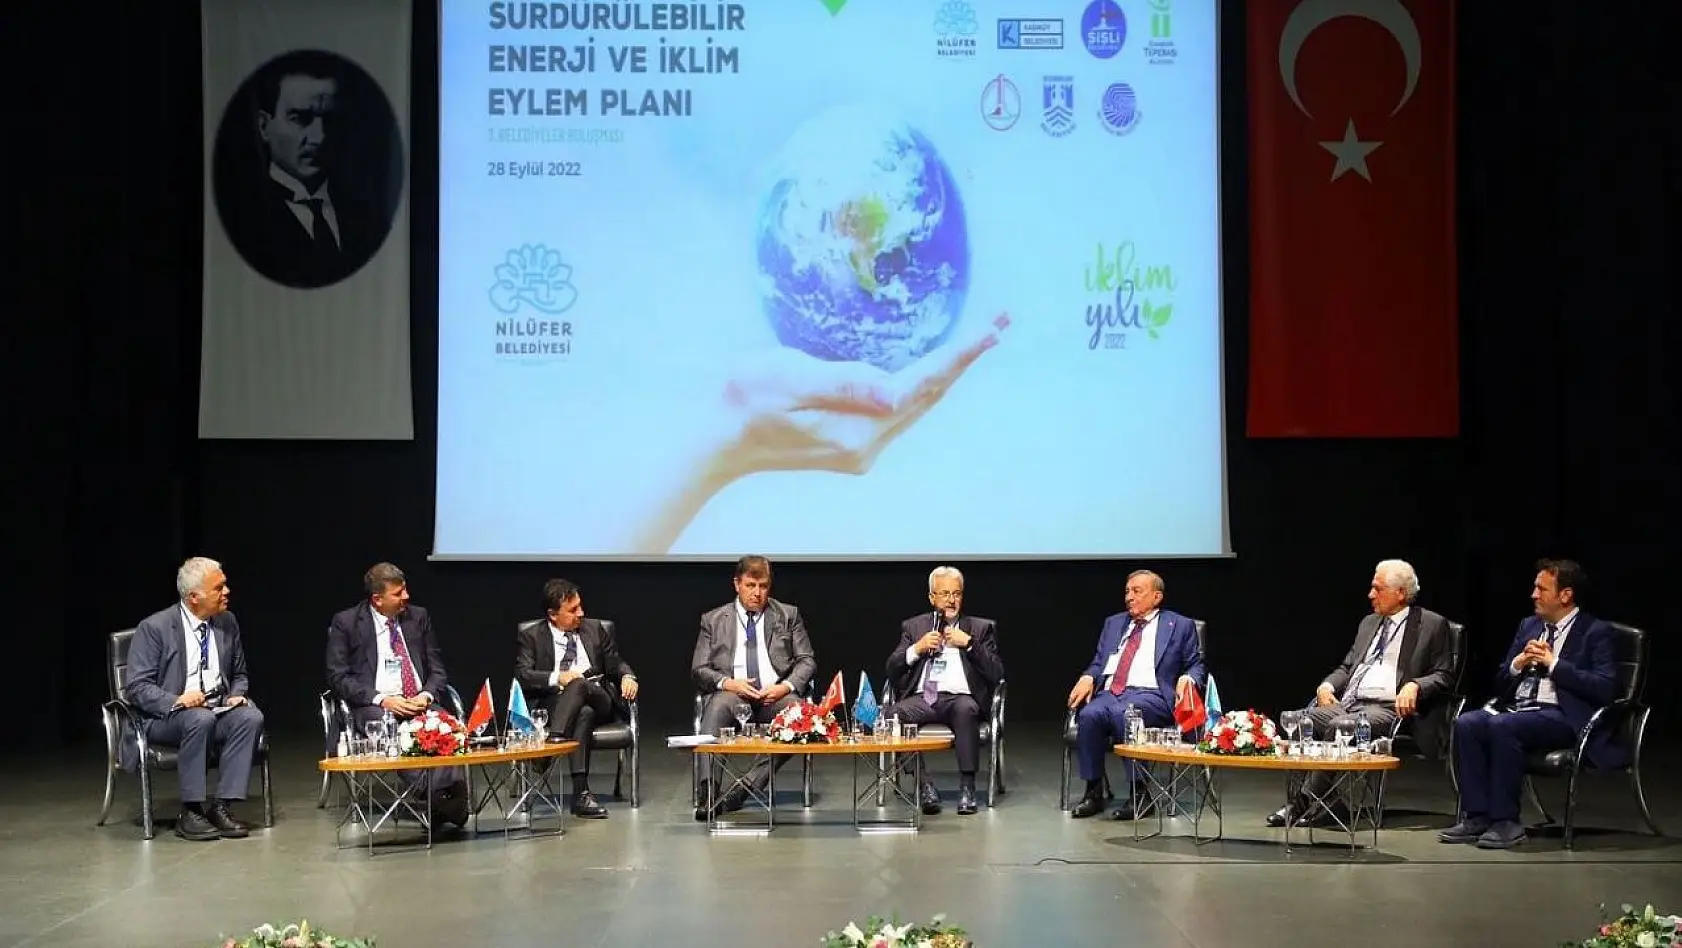 Nilüfer Belediyesi Başkanı Turgay Erdem: 'Dünyada Sanayi Devrimi ile başlayan bu süreç, ne yazık ki bizi bir krizin eşiğine getirdi'